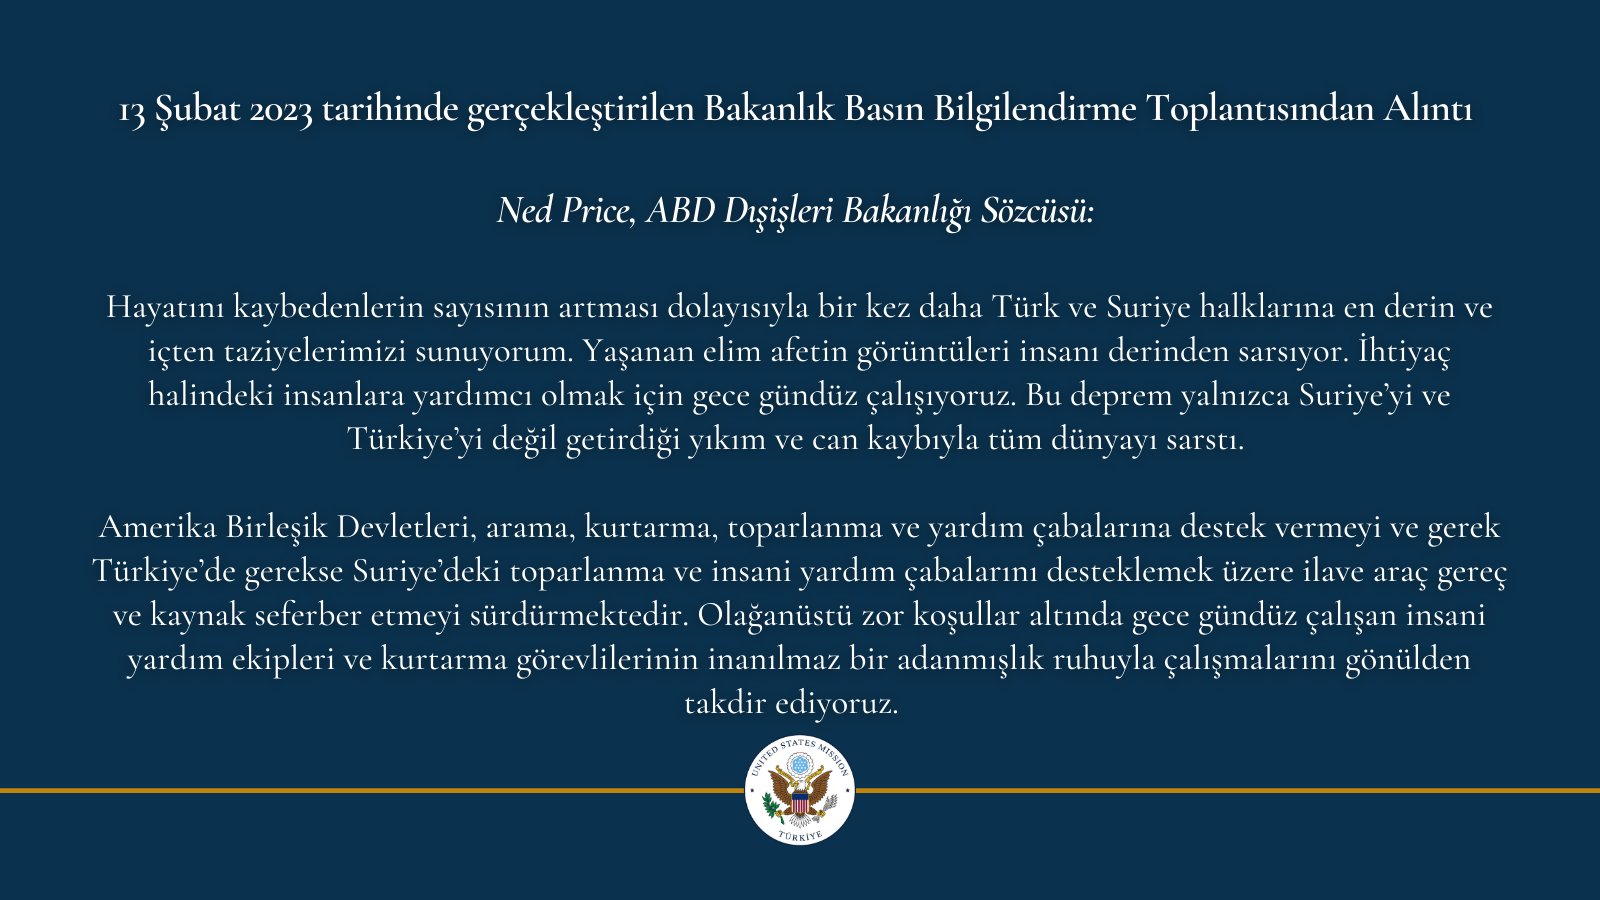 ABD Dışişleri Bakanlığı Sözcüsü Ned Price'den Türkiye ve Deprem Hakkında Basın Açıklaması